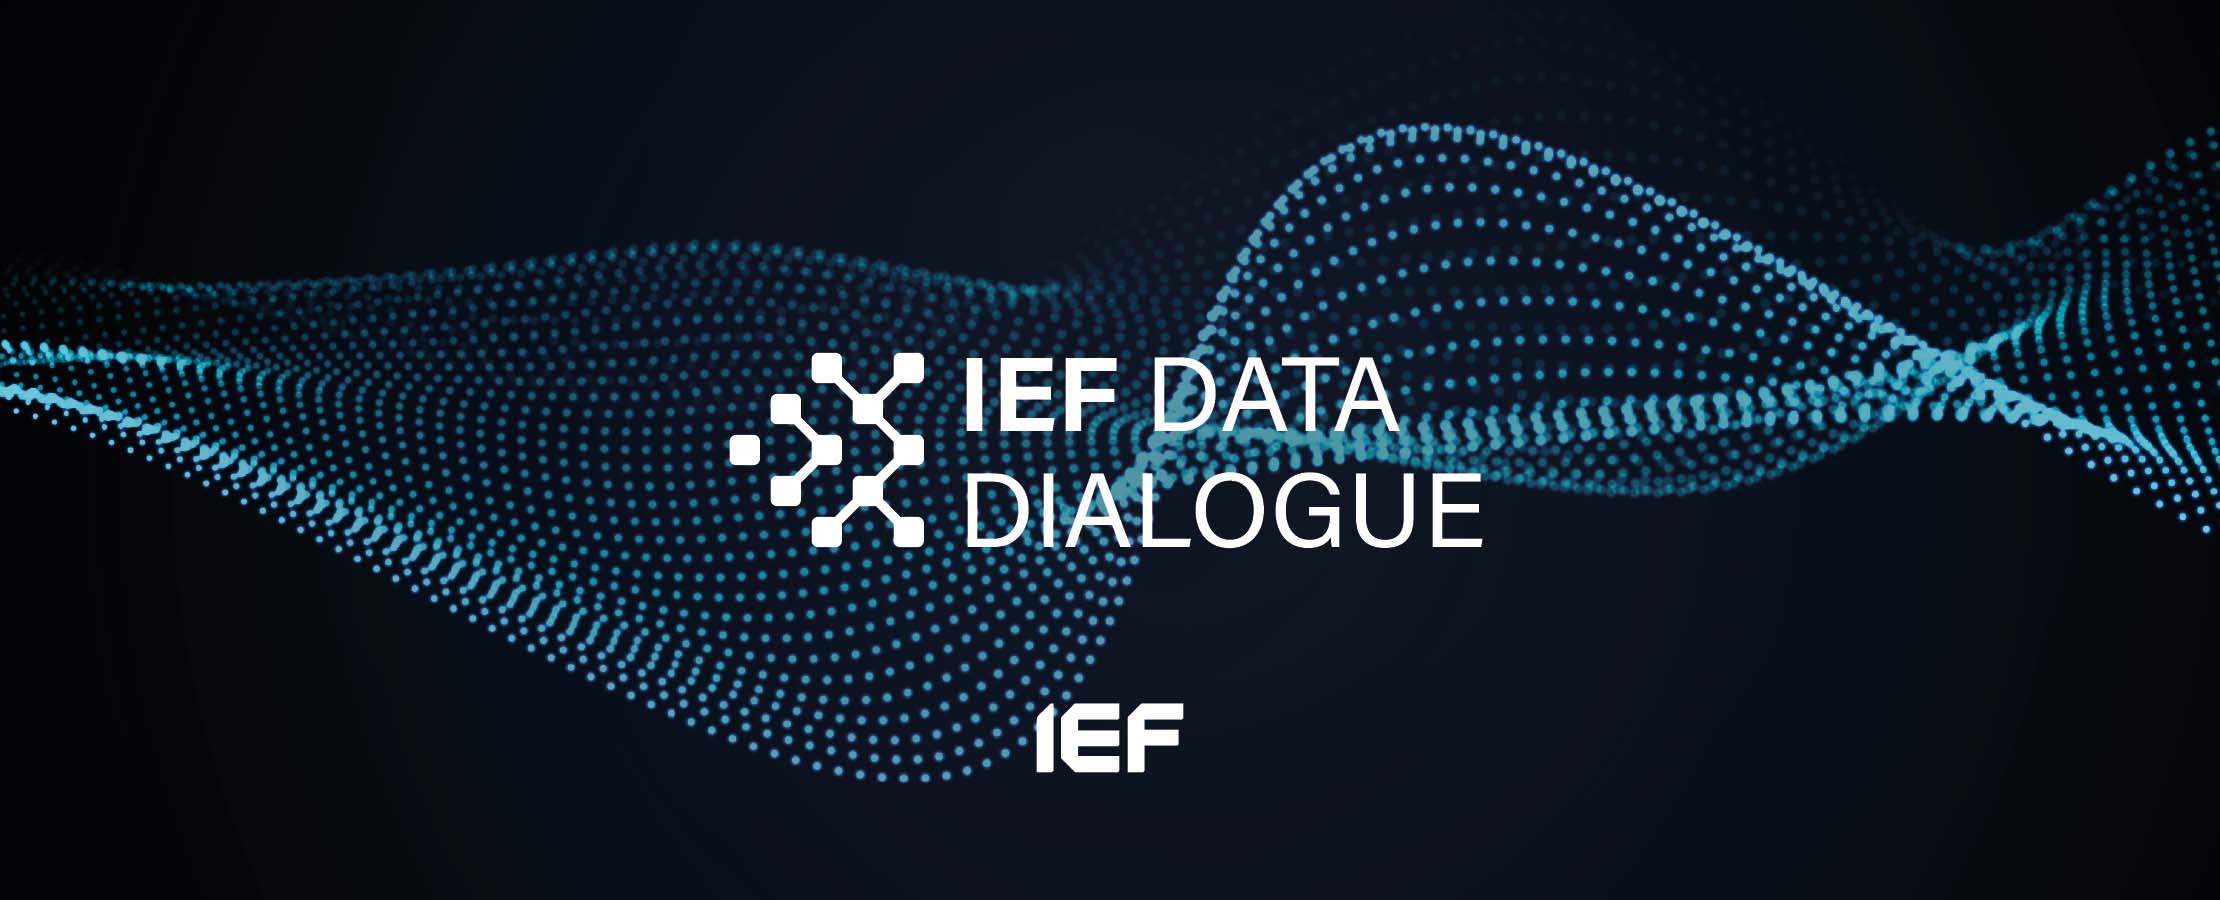 IEF Data Dialogue